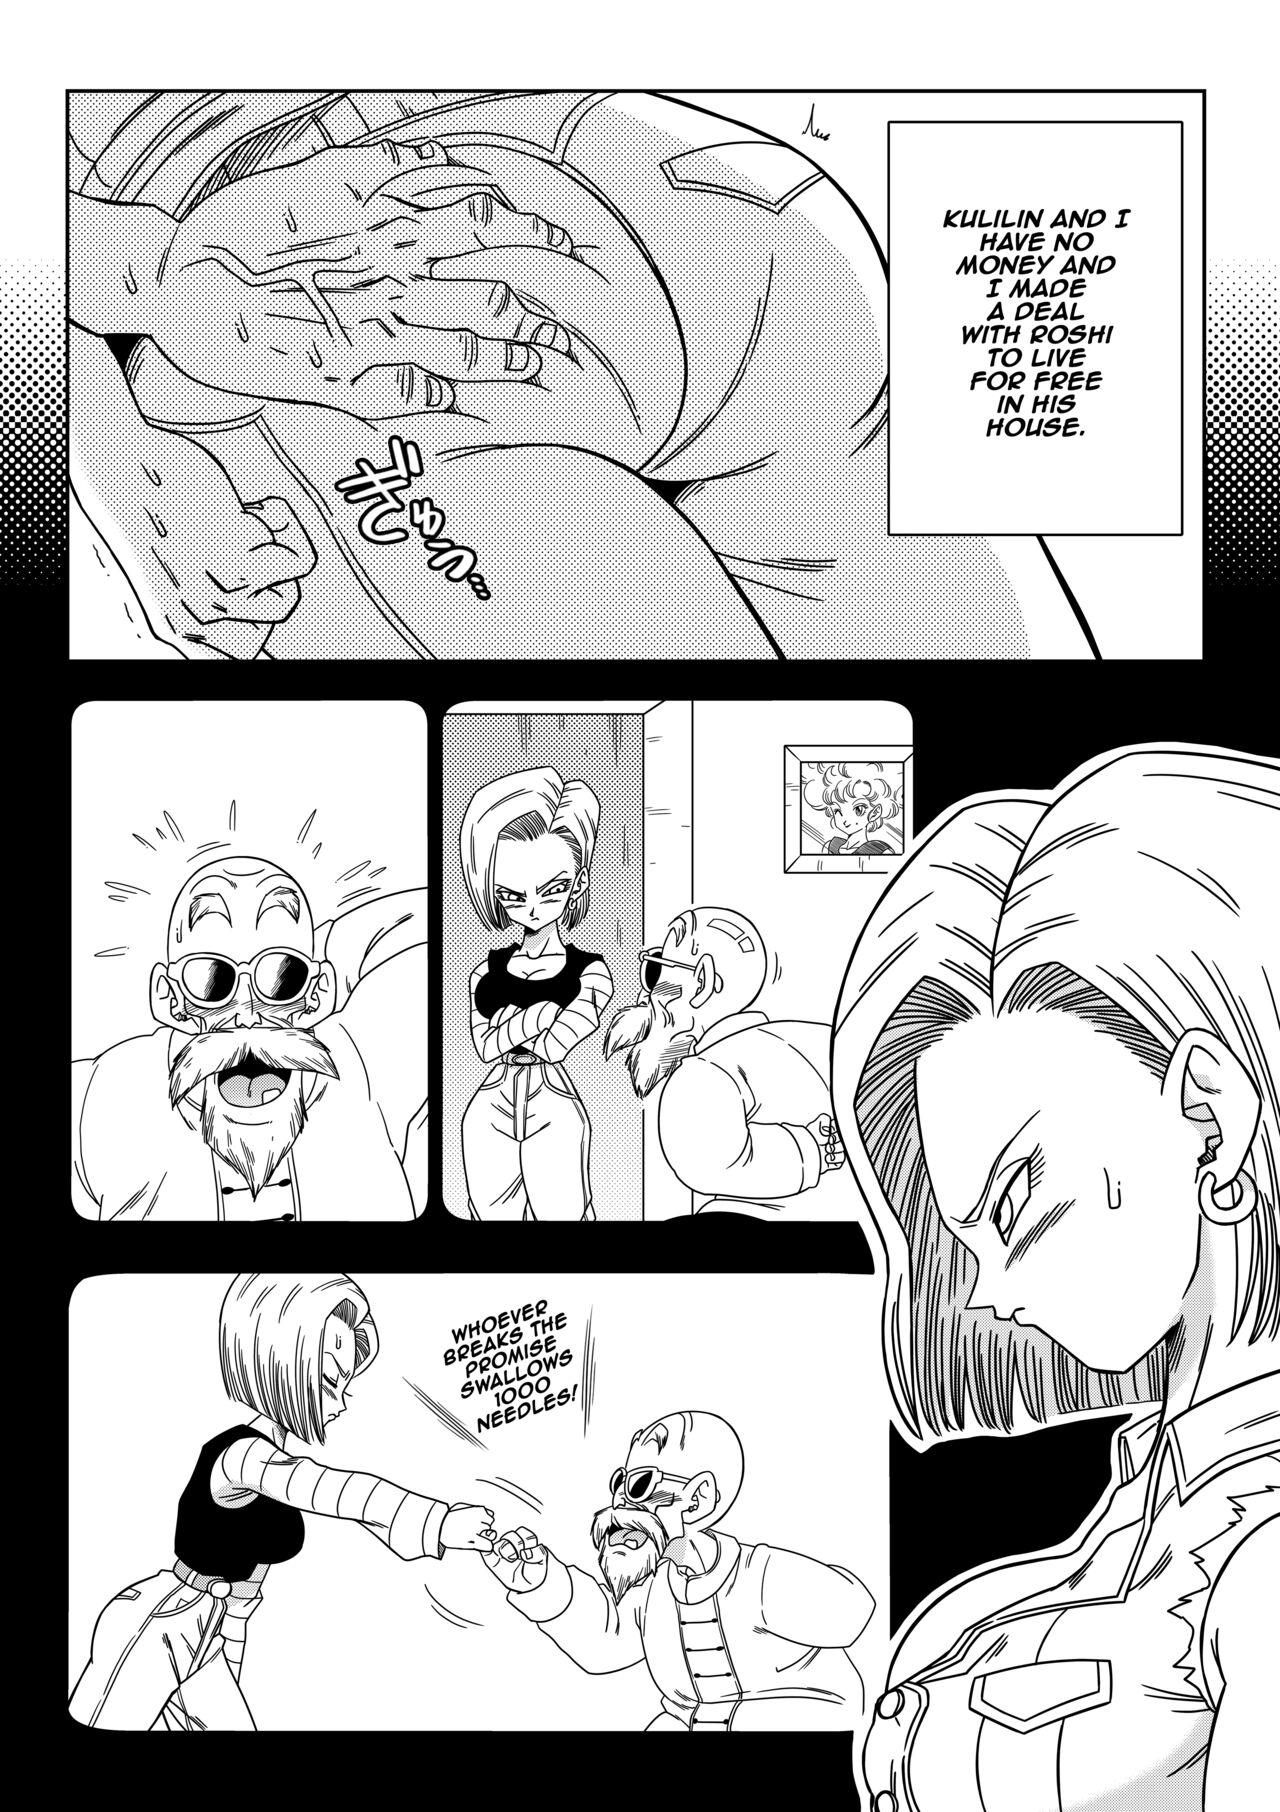 Girl Girl Android 18 vs Master Roshi - Dragon ball z Dragon ball Gritona - Page 3